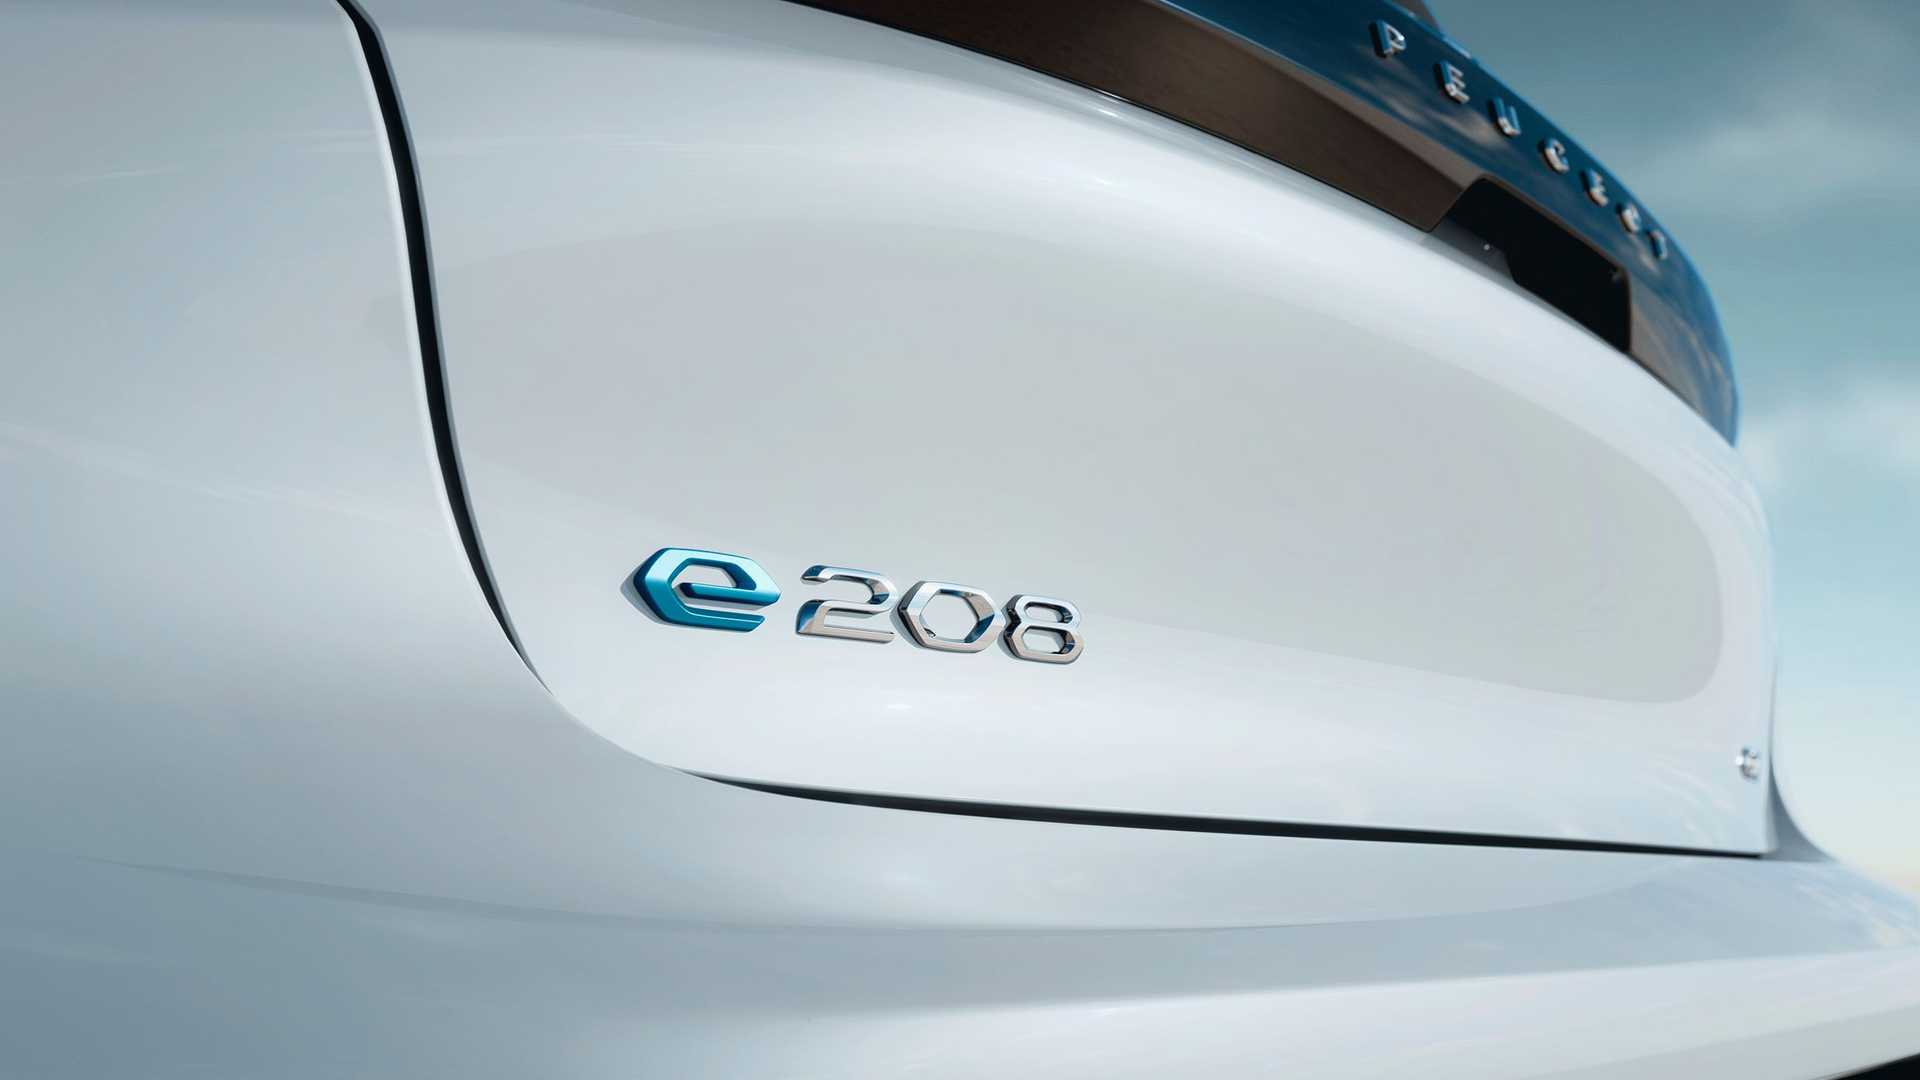 2023 Peugeot e-208 tanıtıldı: Daha fazla güç ve menzil sunuyor